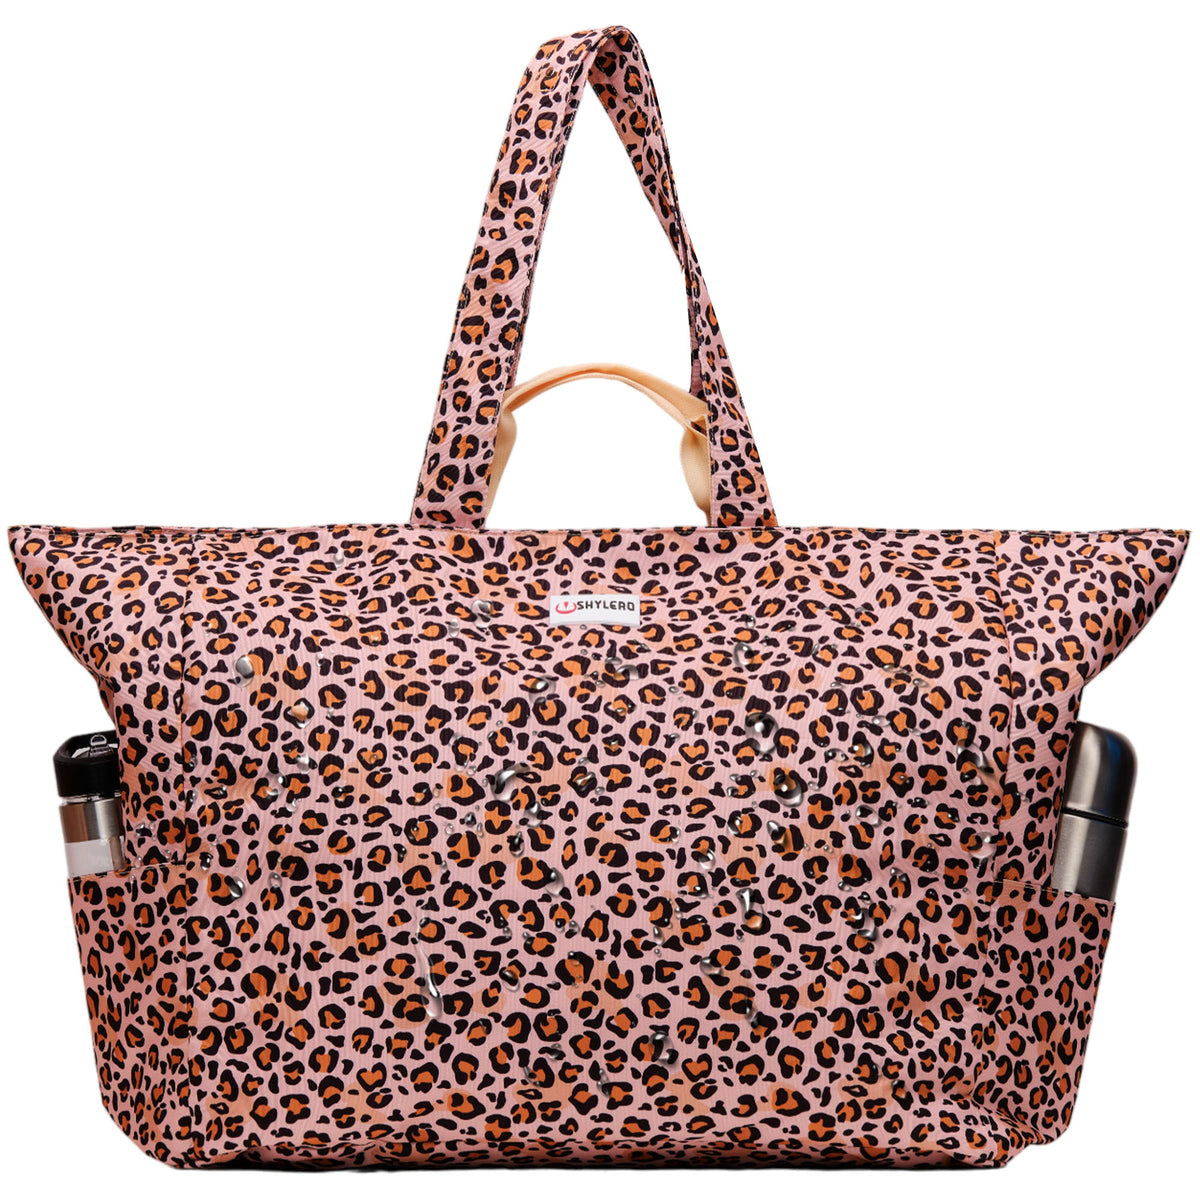 Weekender Bag | Top YKK® Zip | L26"xH18"xW12" | Leopard